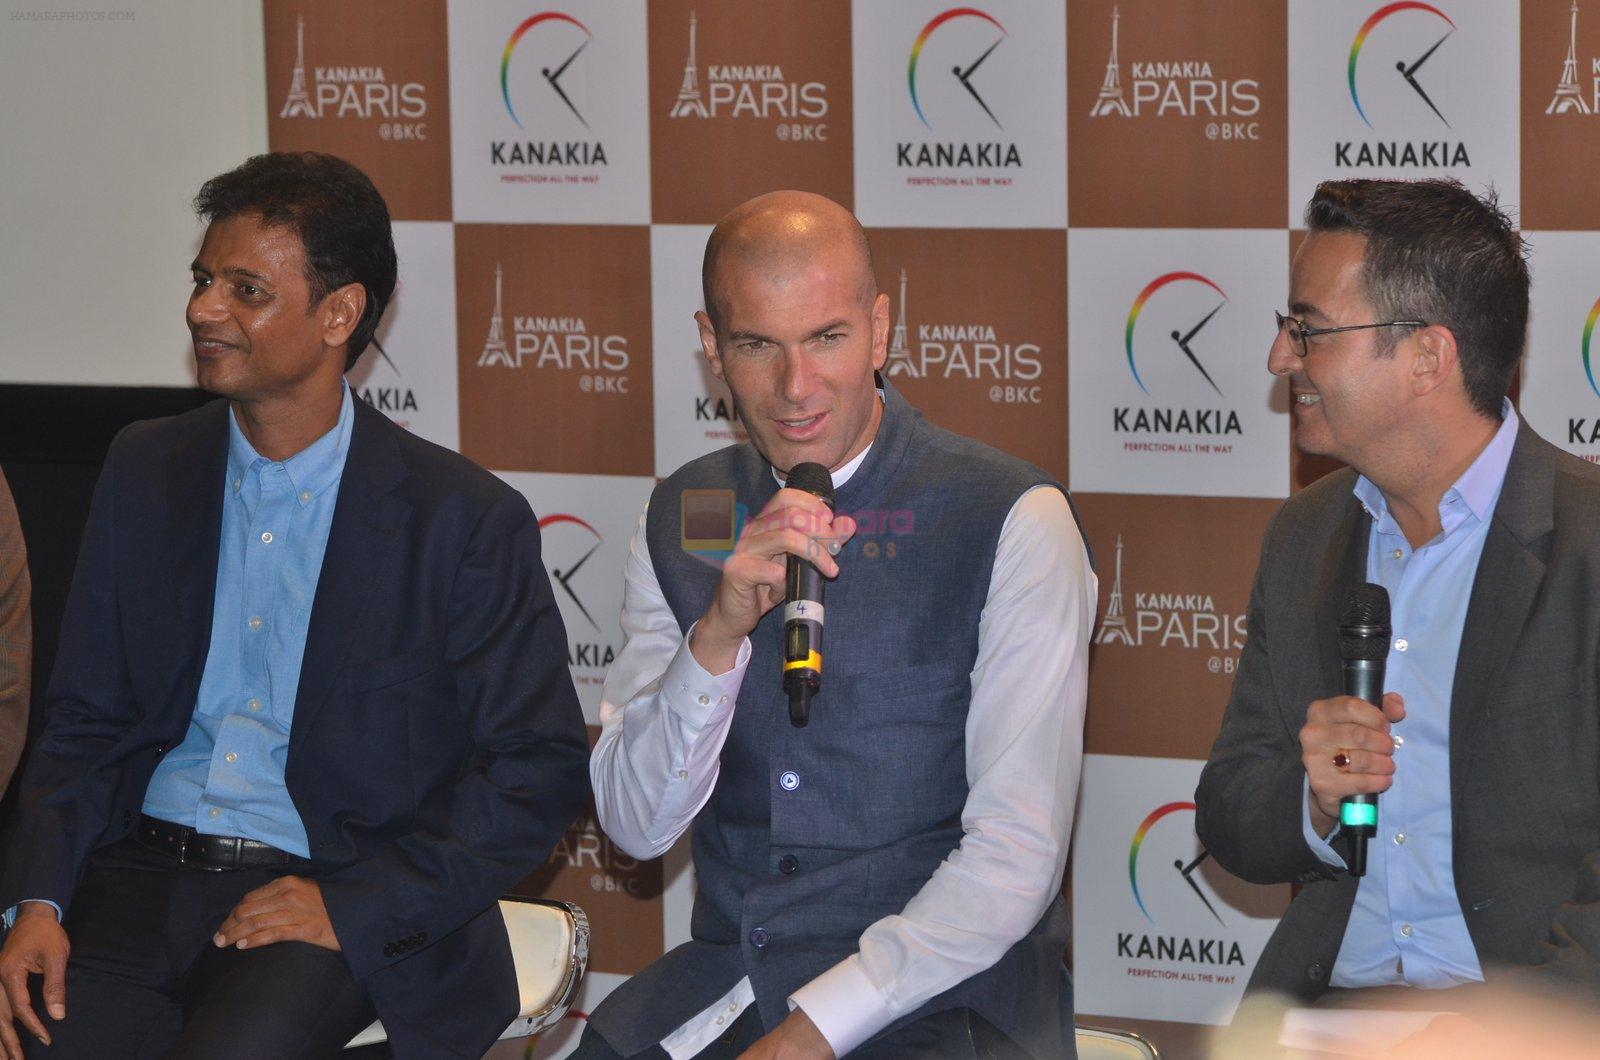 Zidane press meet on 10th June 2016